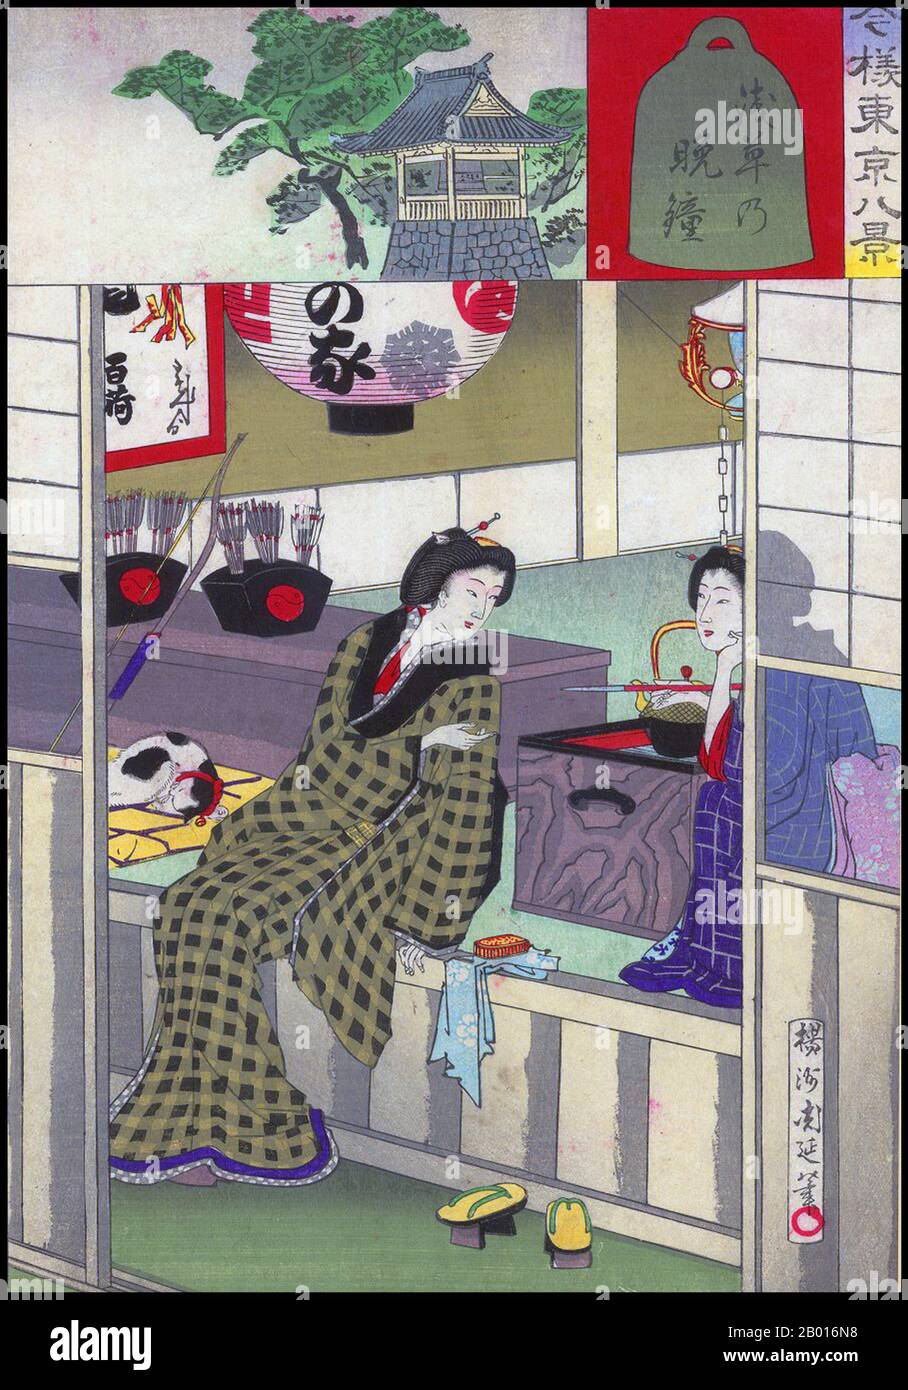 Giappone: Due geishas rilassante dopo aver intrattenuto un cliente; gli intarsi che mostrano la campana del coprifuoco ad Asakusa. Ukiyo-e stampa di blocco di legno di Toyohara Chikanobu (1838-1912), 1888. Per la maggior parte del XX secolo, Asakusa era il principale quartiere dei divertimenti di Tokyo. Il Rokku o il 'quartiere dei teatri' era famoso come quartiere dei teatri, con famosi cinema come il Denkikan. L'area è stata gravemente danneggiata dai bombardamenti americani durante la seconda guerra mondiale, in particolare i bombardamenti di Tokyo del marzo 1945. La zona fu ricostruita dopo la guerra, ma ora è stata superata da Shinjuku e da altre aree colorate. Foto Stock